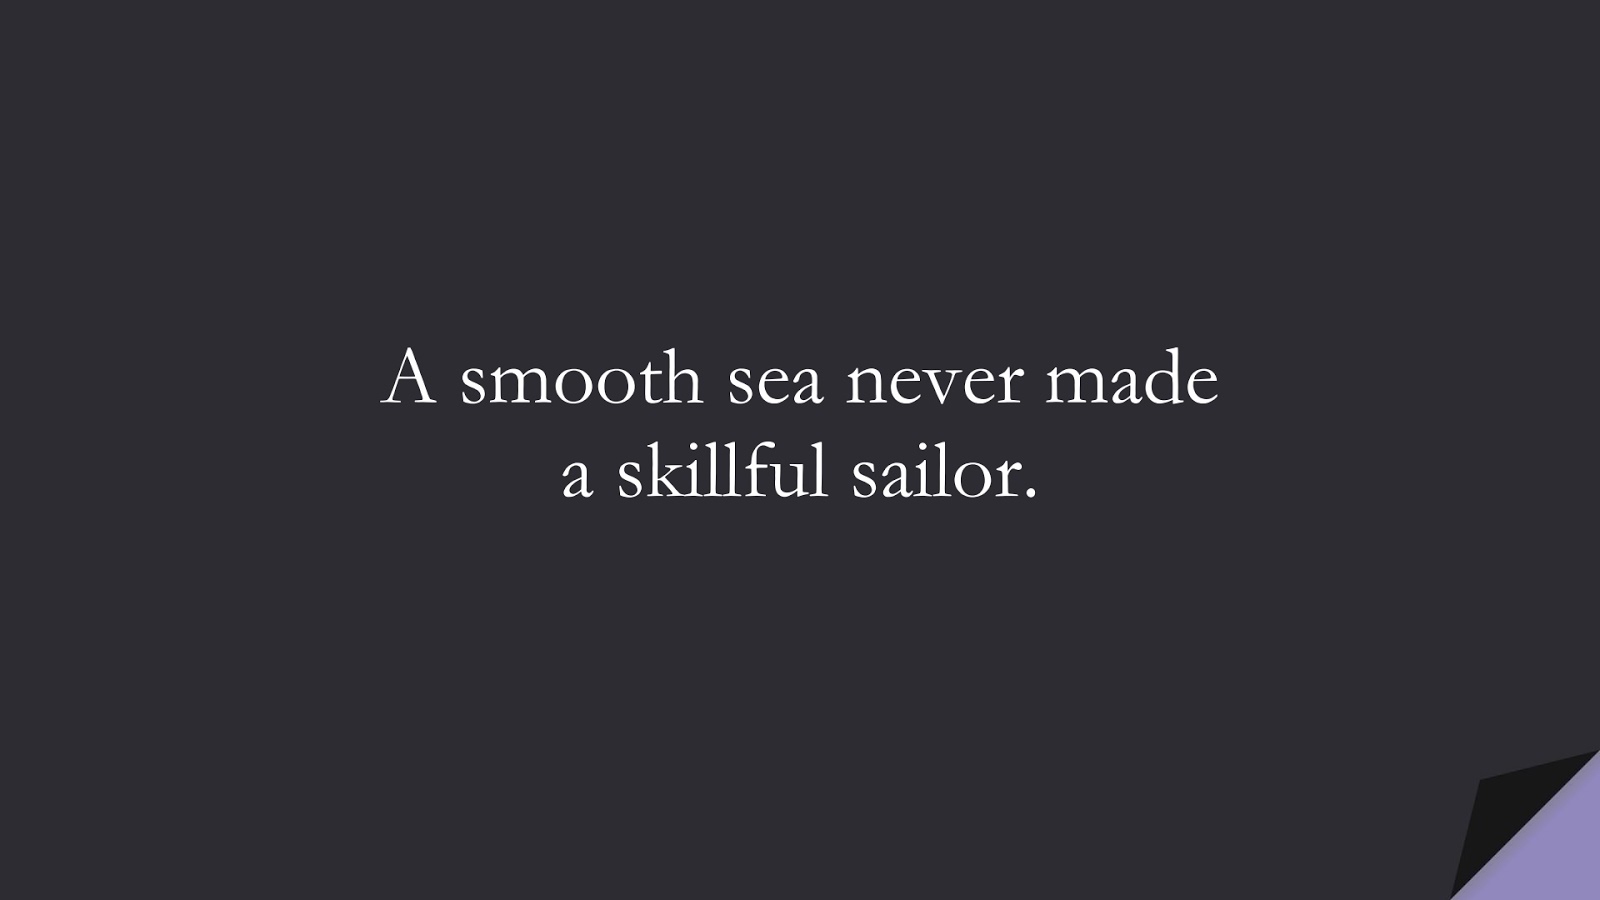 A smooth sea never made a skillful sailor.FALSE